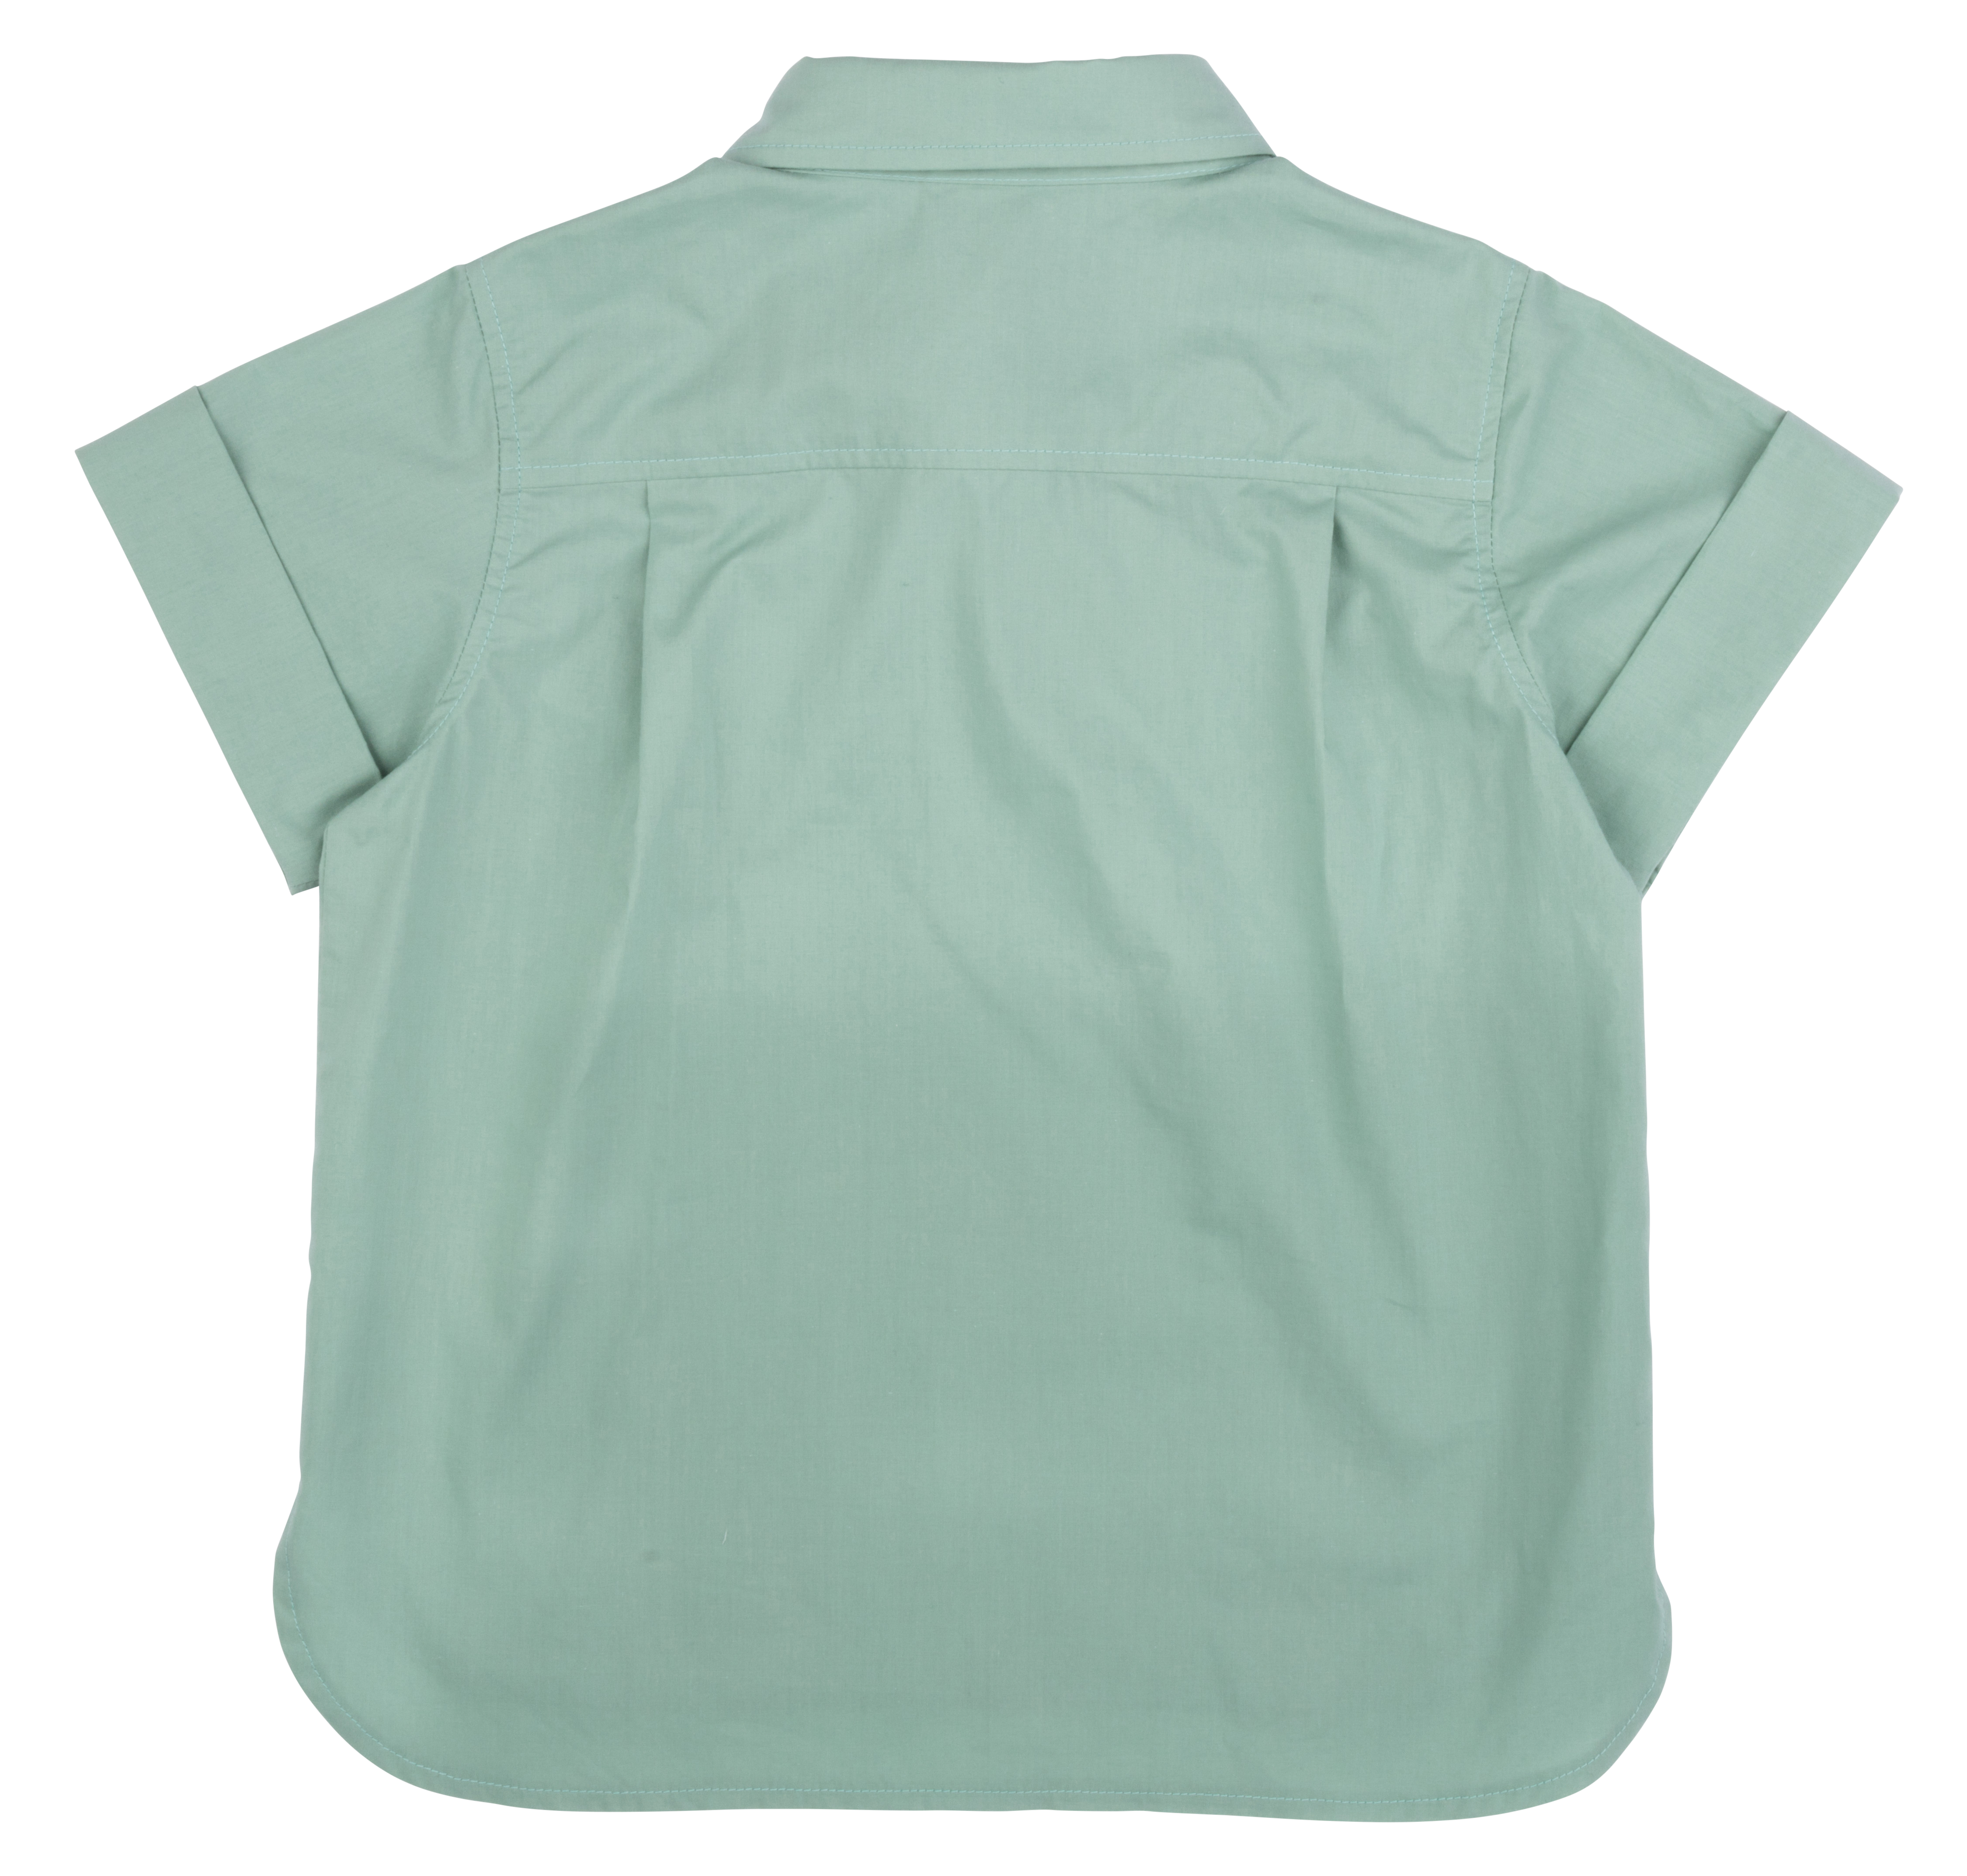         Tilted Shirt - Beryl Green